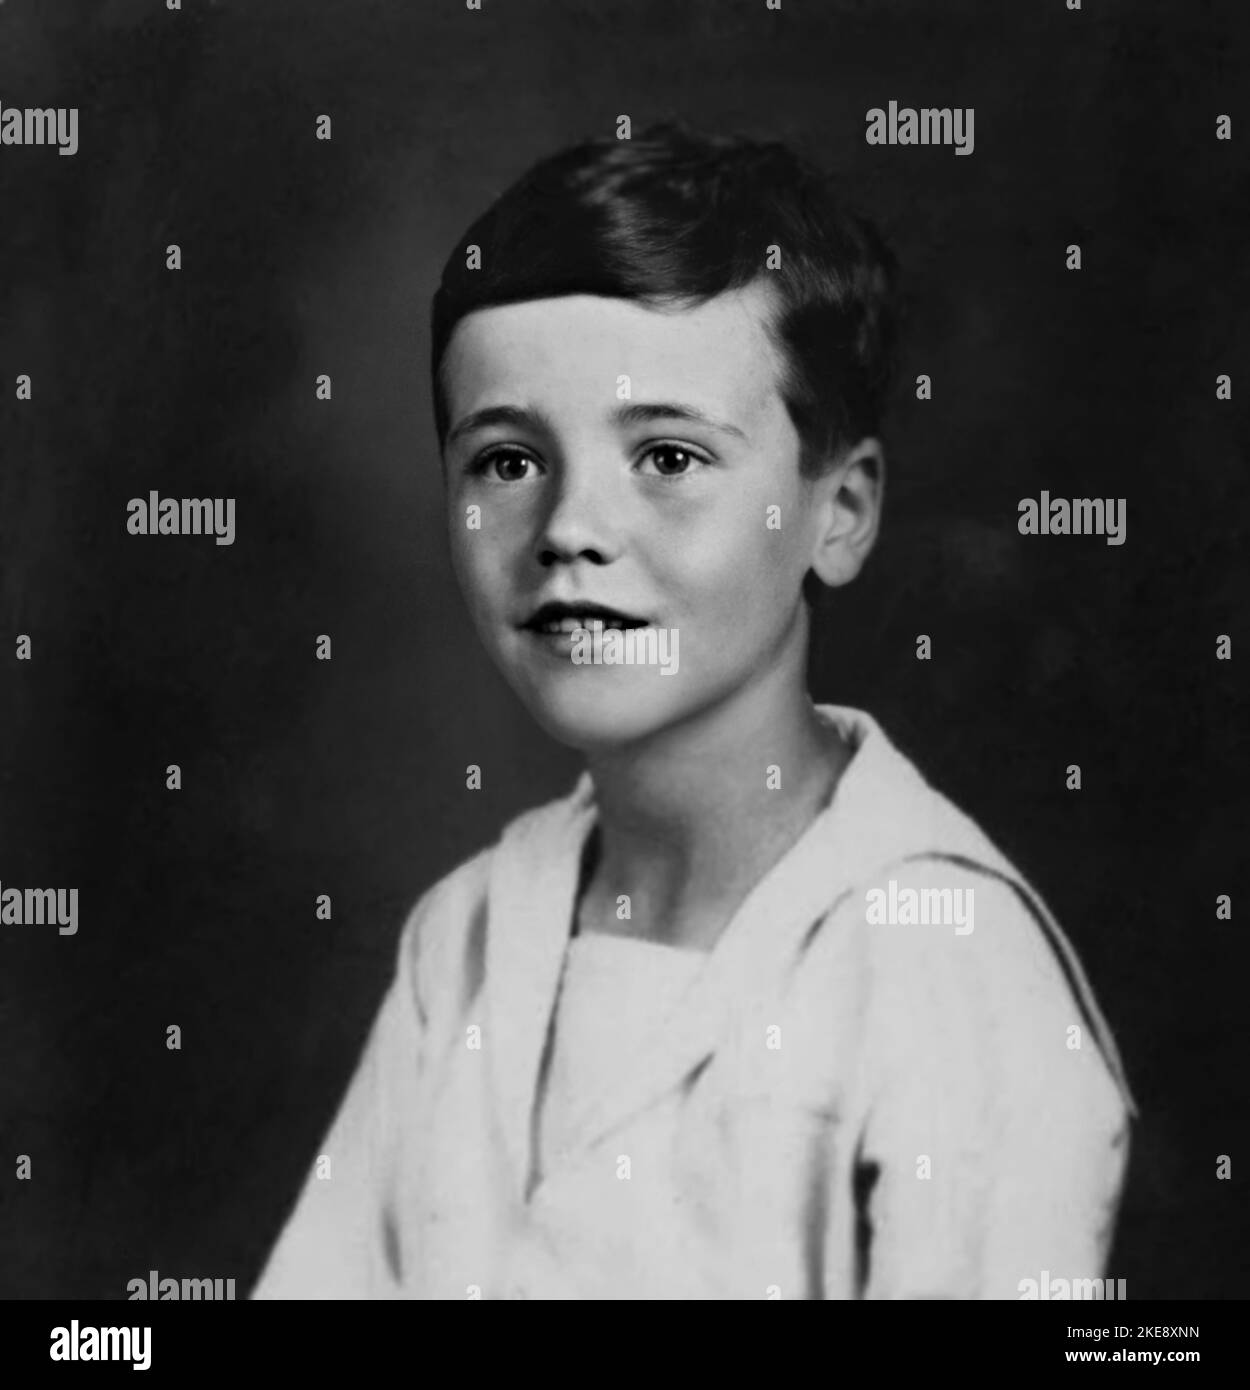 1933 ca, USA : The celebrated american actor JACK LEMMON ( 1925 - 2001 ) when was a young boy aged 8 . Unknown photographer .- HISTORY - FOTO STORICHE - ATTORE - MOVIE - CINEMA - SEX SYMBOL - personalità da bambino bambini da giovane - personality personalities when was young - INFANZIA - CHILDHOOD - BAMBINO - BAMBINI - CHILDREN - CHILD - vestito alla marinara - marinaretto - sailor dress - smile sorriso - PORTRAIT - RITRATTO --- ARCHIVIO GBB Stock Photo